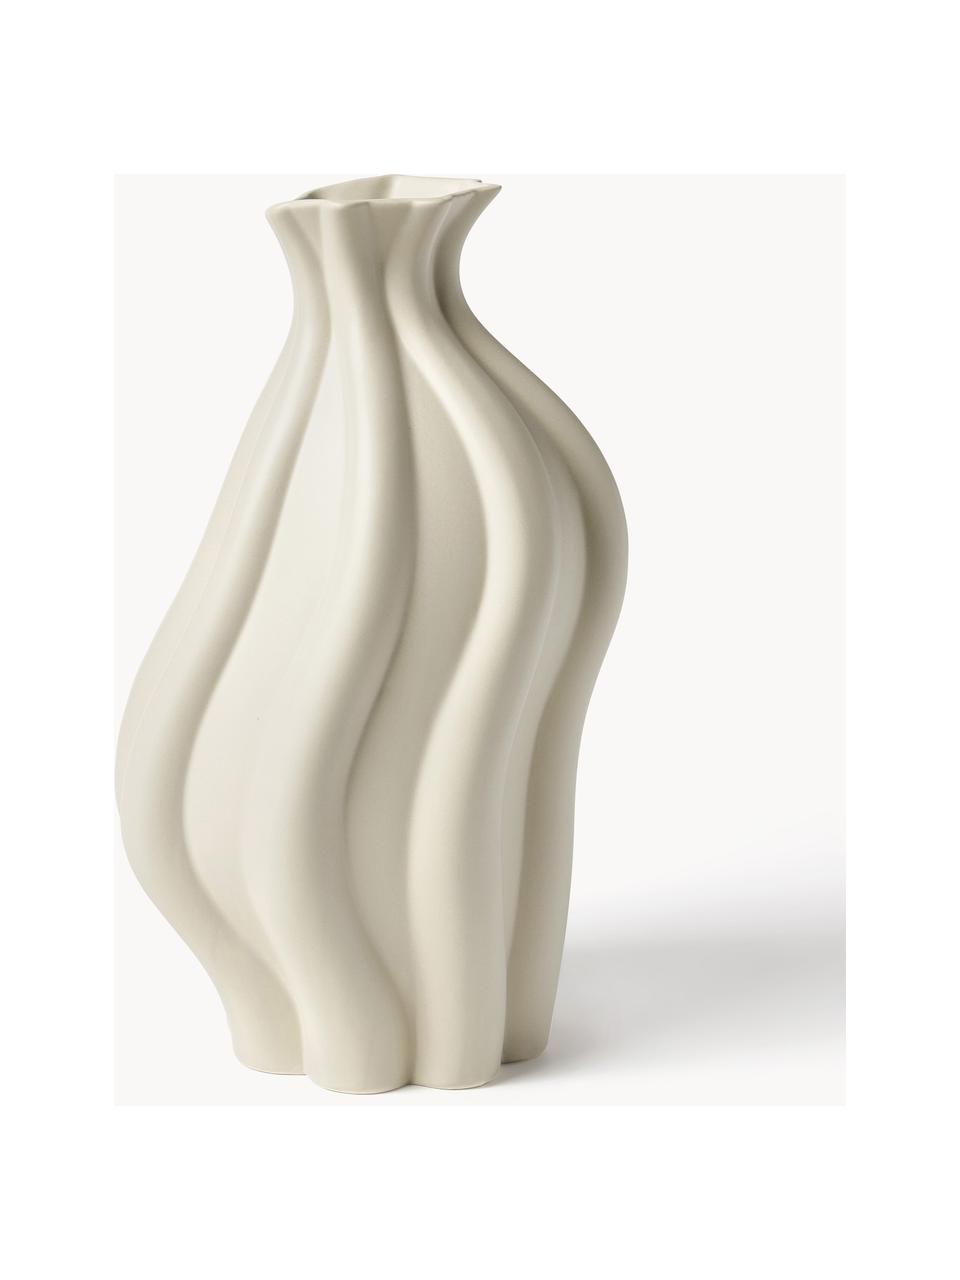 Vase Blom aus Keramik, Keramik, Beige, B 19 x H 33 cm